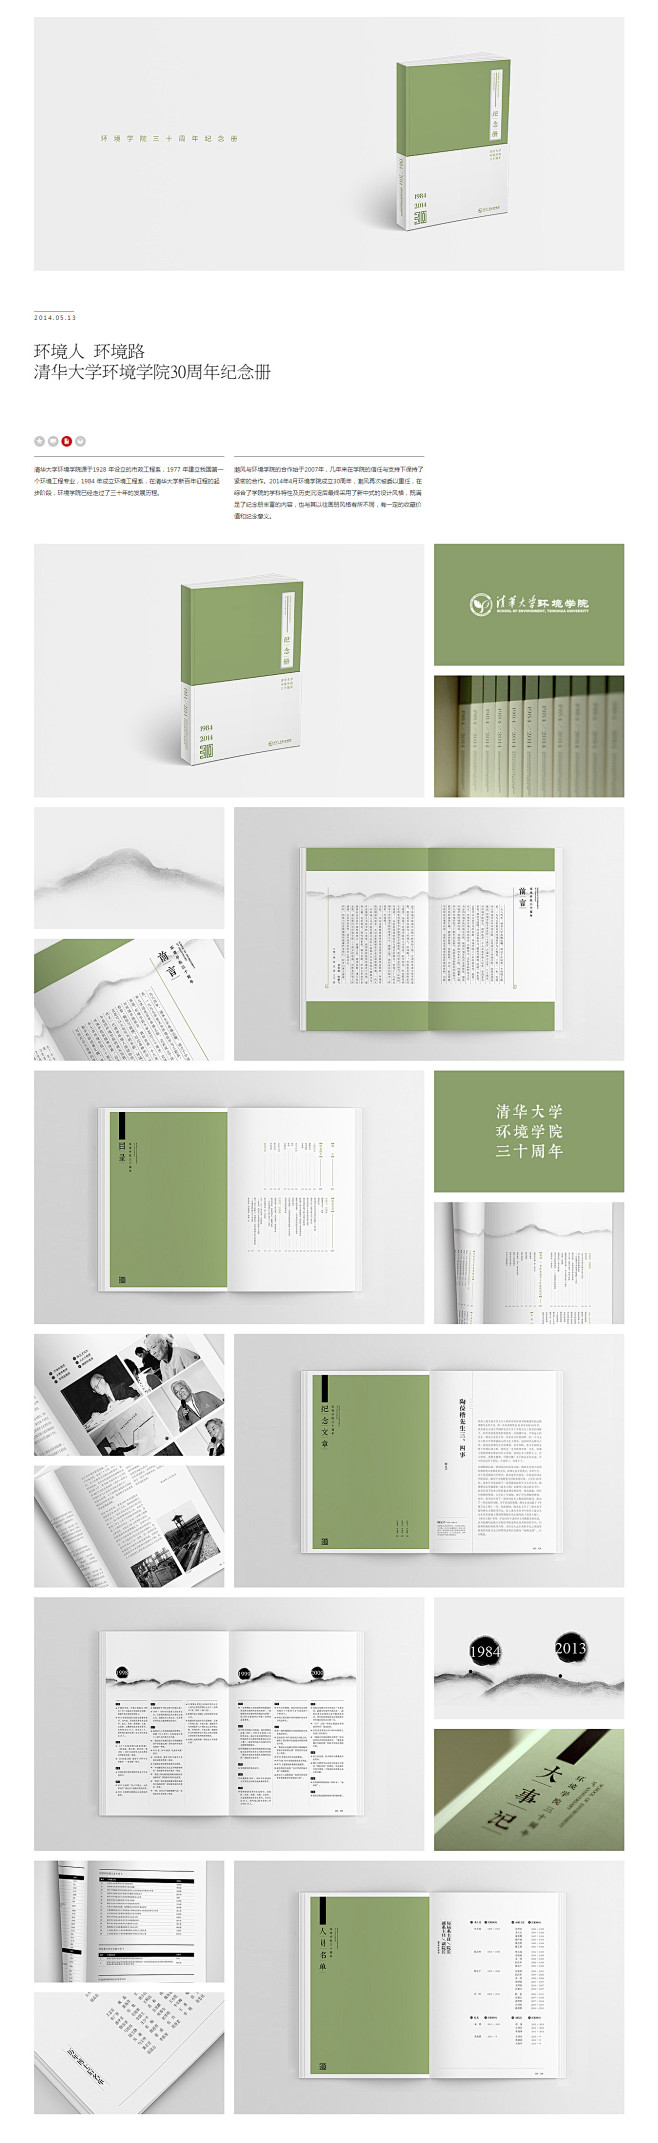 清华大学环境学院30周年纪念册设计-潮风...